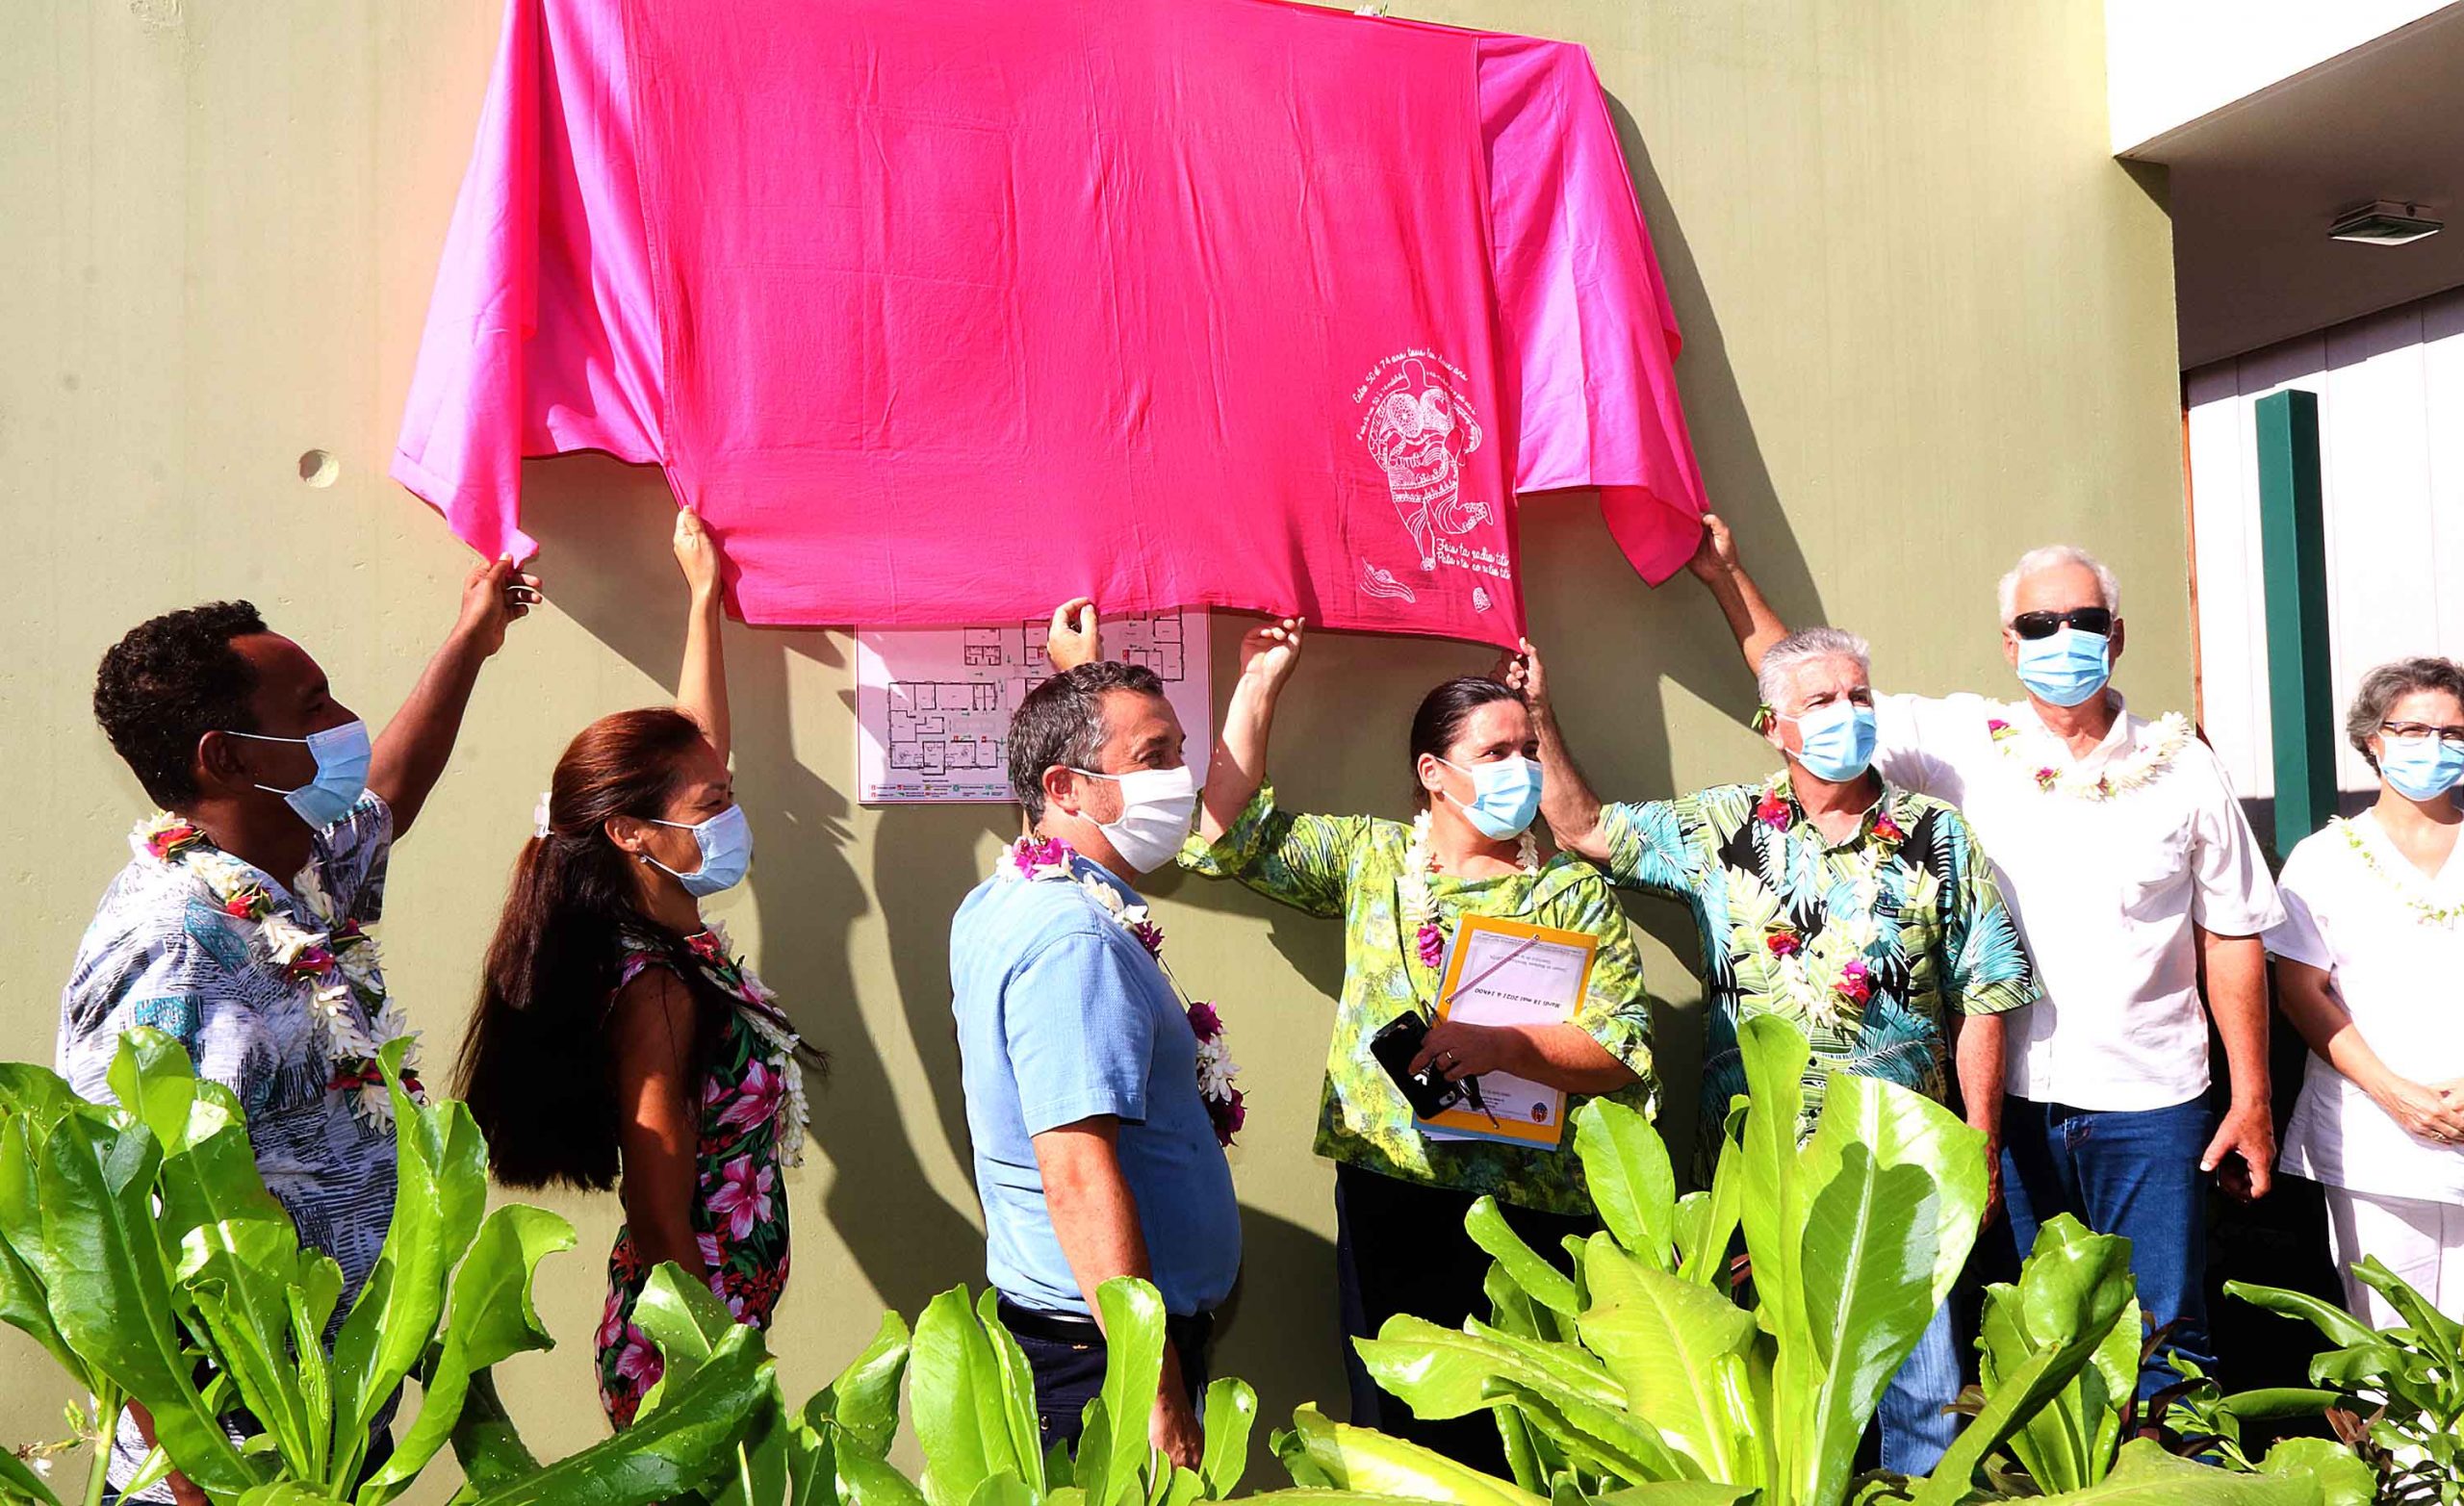 Inauguration du centre de santé et de prévention de Taravao et remise du troisième label Fare Ea Le ministre de la Santé, Jacques Raynal, a officiellement inauguré, mardi après-midi à Taravao, le centre de santé et de prévention de la presqu’île et a, à cette occasion, décerné à ce centre le troisième label Fare Ea. La cérémonie s’est déroulée en présence également du Vice-Président, Tearii Te Moana Alpha, et du représentant de l’Etat, chef des subdivisions des îles du Vent et des îles Sous-le-Vent, Guy Fitzer. Le centre de santé et de prévention de la presqu’île a en fait ouvert ses portes en juin 2020. Ce projet a réuni tous les services de prévention et de santé dans un même lieu, à proximité de l’hôpital de Taravao et de la maison de retraite Fare matahiapo. L’objectif principal de cette nouvelle construction, avec un financement dans le cadre du Contrat de projets Etat-Pays, était la réunion des différents services de soins de santé primaires (SSP) avec le relogement des services de consultations médicales et de prévention, le centre d'hygiène dentaire, l’hygiène scolaire, le centre de protection infantile et le centre de protection maternelle de la Direction de la santé. Dès son ouverture, le centre s’est lancé dans une démarche d’obtention du label Fare Ea, gage de qualité des services rendus à la population de proximité, qui rentre dans le cadre du programme de modernisation des services de santé primaires 2019-2023 en Polynésie. Pour l’obtenir, la structure de santé s’engage volontairement dans un processus d’amélioration de qualité et d’efficacité des soins, reconnaissant la mise en œuvre d’actions à la fois préventives, curatives, promotionnelles de santé au sein d’un réseau de partenaires locaux, respectant les concepts des services de santé primaires définis par l’organisation mondiale de la santé (OMS) et prenant en compte les déterminants de santé de la population. Le centre a concrétisé ce projet de labellisation, avec l’accompagnement technique de la cellule d’expertise SSP de la Direction de la santé, en ayant atteint les objectifs suivants : • l’amélioration de la qualité de travail des professionnels dans un espace aménagé et choisi par les professionnels (23 personnes, au total, y travaillent) ; • l’amélioration de l’accueil des patients : o avec des espaces dédiés pour l’apprentissage de la culture au sol de végétaux comestibles ; o par la détente dans des salles d’attente individuelle, avec des espaces aménagés pour écouter des émissions de prévention à la télévision ; o par la possibilité d’effectuer des exercices musculaires sur des pédaliers à proximité des salles d’attente ; • la mutualisation des interventions auprès d’un même public: l’aménagement d’une salle de classe a permis aux professionnels d’adapter leurs missions de prévention auprès des élèves scolarisés de la presqu’île. En moyenne, 12 élèves par classe fréquentent le centre de santé et de prévention pour des soins dentaires, d’hygiène scolaire et d’hygiène alimentaire. • la création d’un service d’archives médicales regroupant toutes les données médicales de l’hôpital de Taravao et du centre de santé et de prévention de la presqu’île, l’objectif, au final, étant de dématérialiser toutes les données archivées et créer un seul dossier patient. A ce jour, plus de 100 000 dossiers scolaires ont été scannés, archivés par un agent fonctionnaire avec l’aide de deux CAE à temps plein. Dans ce contexte favorable, les professionnels sont impliqués, sur un même site, dans toutes les activités centrées sur la prise en charge des patients et de leur famille, de la conception d’un enfant, avec son suivi scolaire, et jusqu’à la personne âgée. Le ministre de la Santé, en charge de la prévention, a donc remis ce troisième label Fare Ea – après l’infirmerie de Rimatara et le dispensaire de Papara – en inaugurant ce nouveau centre avec le panneau symbolique du label. Cela constitue une belle reconnnaisance pour les équipes de santé sur place, et c’est également une fierté pour les habitants de la presqu’île